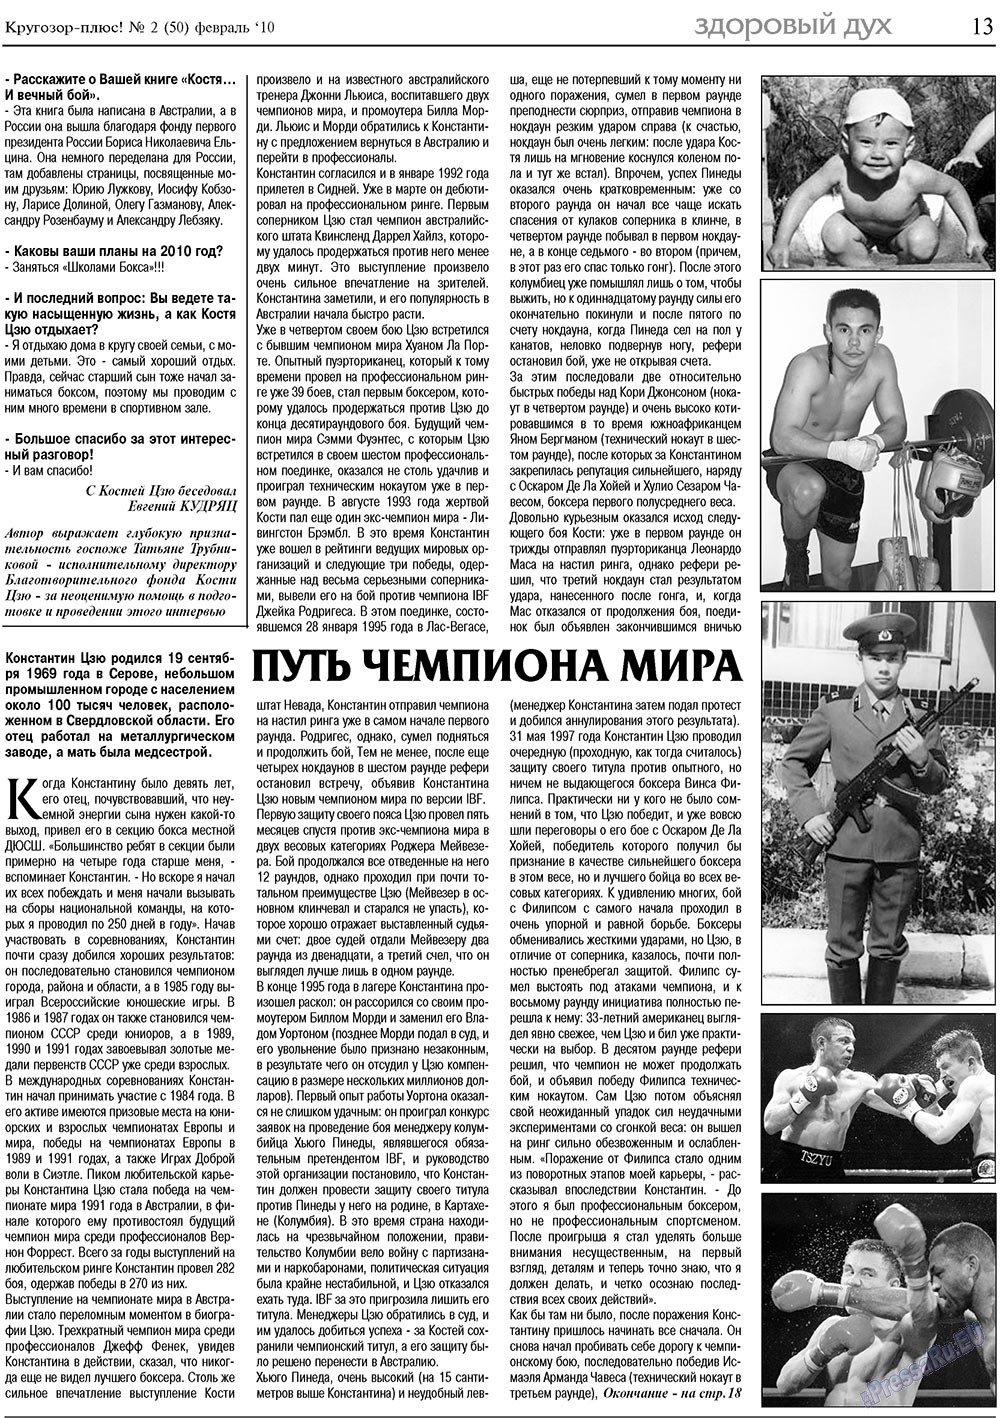 Кругозор плюс!, газета. 2010 №2 стр.13